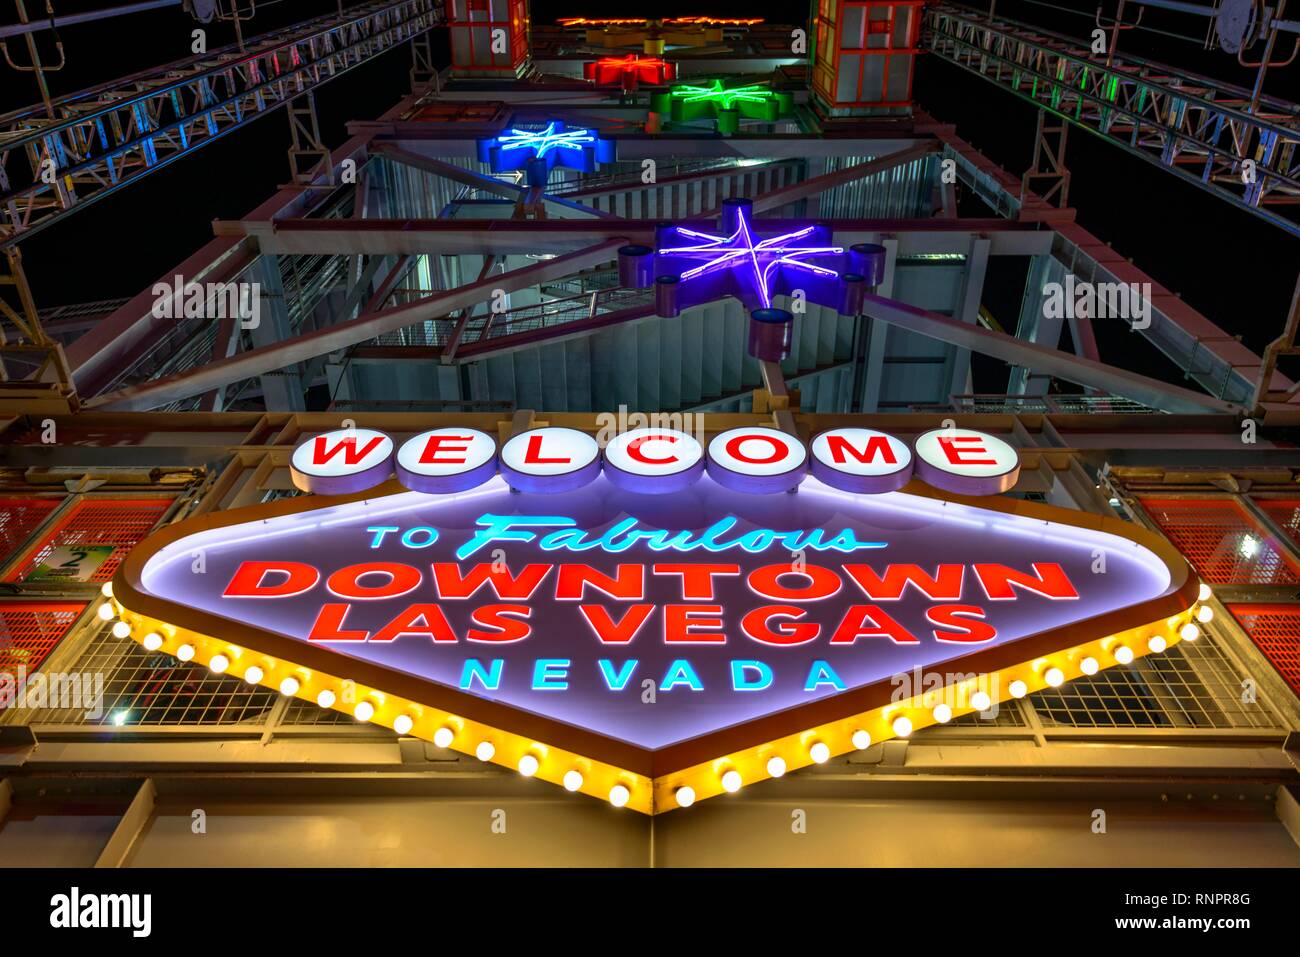 Bienvenido a brillante el fabuloso centro de Las Vegas, Nevada firmar en Fremont Street Experience en Old Las Vegas, Neon Neon Signs, escena nocturna, en el centro de la ciudad, Las V Foto de stock